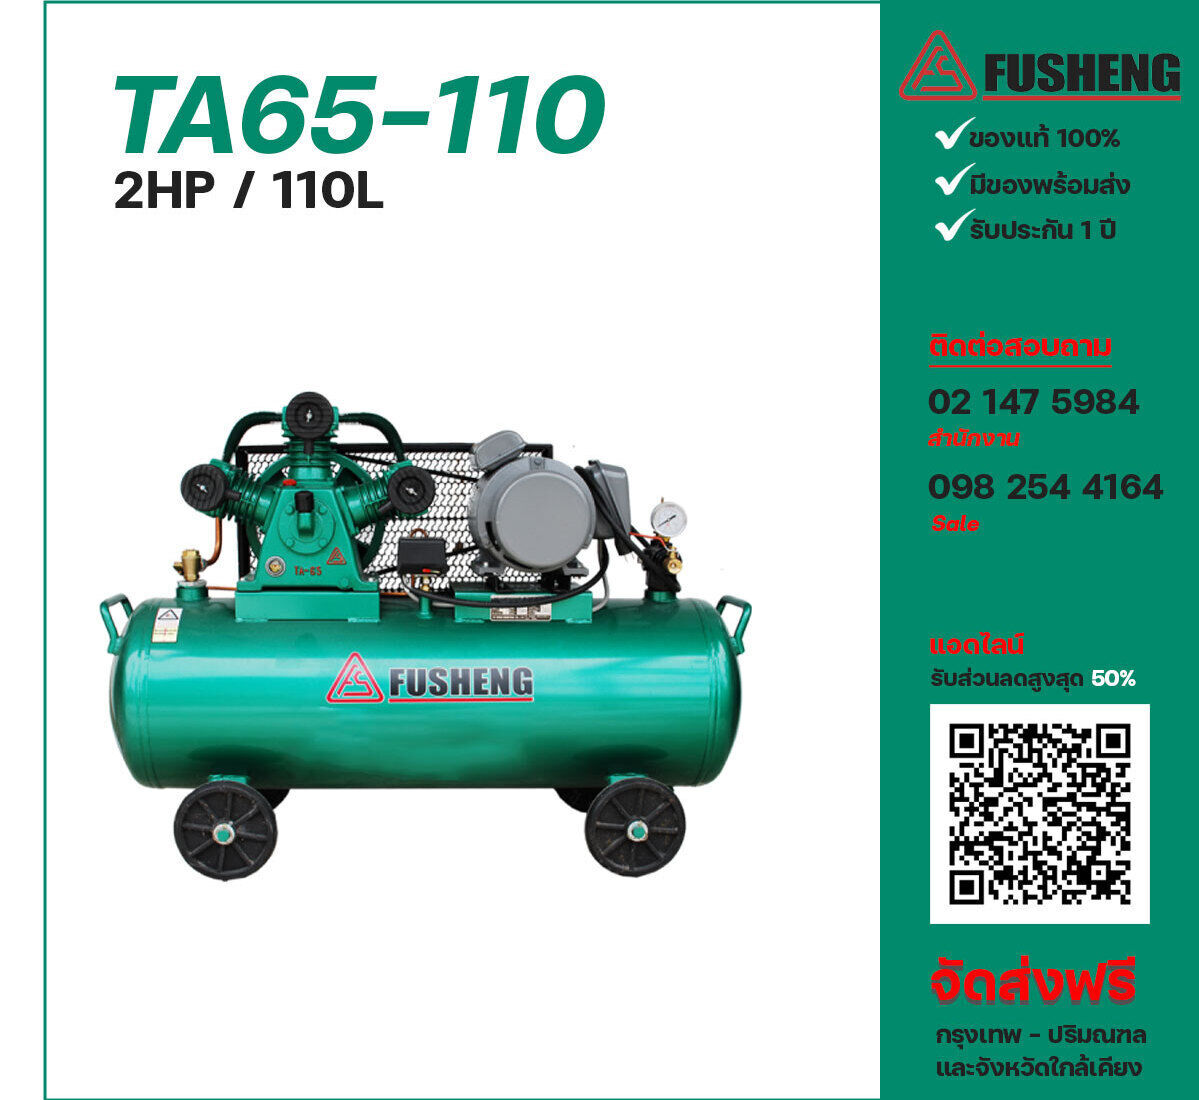 ปั๊มลมฟูเช็ง FUSHENG TA65-110 220V ปั๊มลมลูกสูบ ขนาด 3 สูบ 2 แรงม้า 110 ลิตร FUSHENG พร้อมมอเตอร์ ไฟ 220V ส่งฟรี กรุงเทพฯ-ปริมณฑล รับประกัน 1 ปี